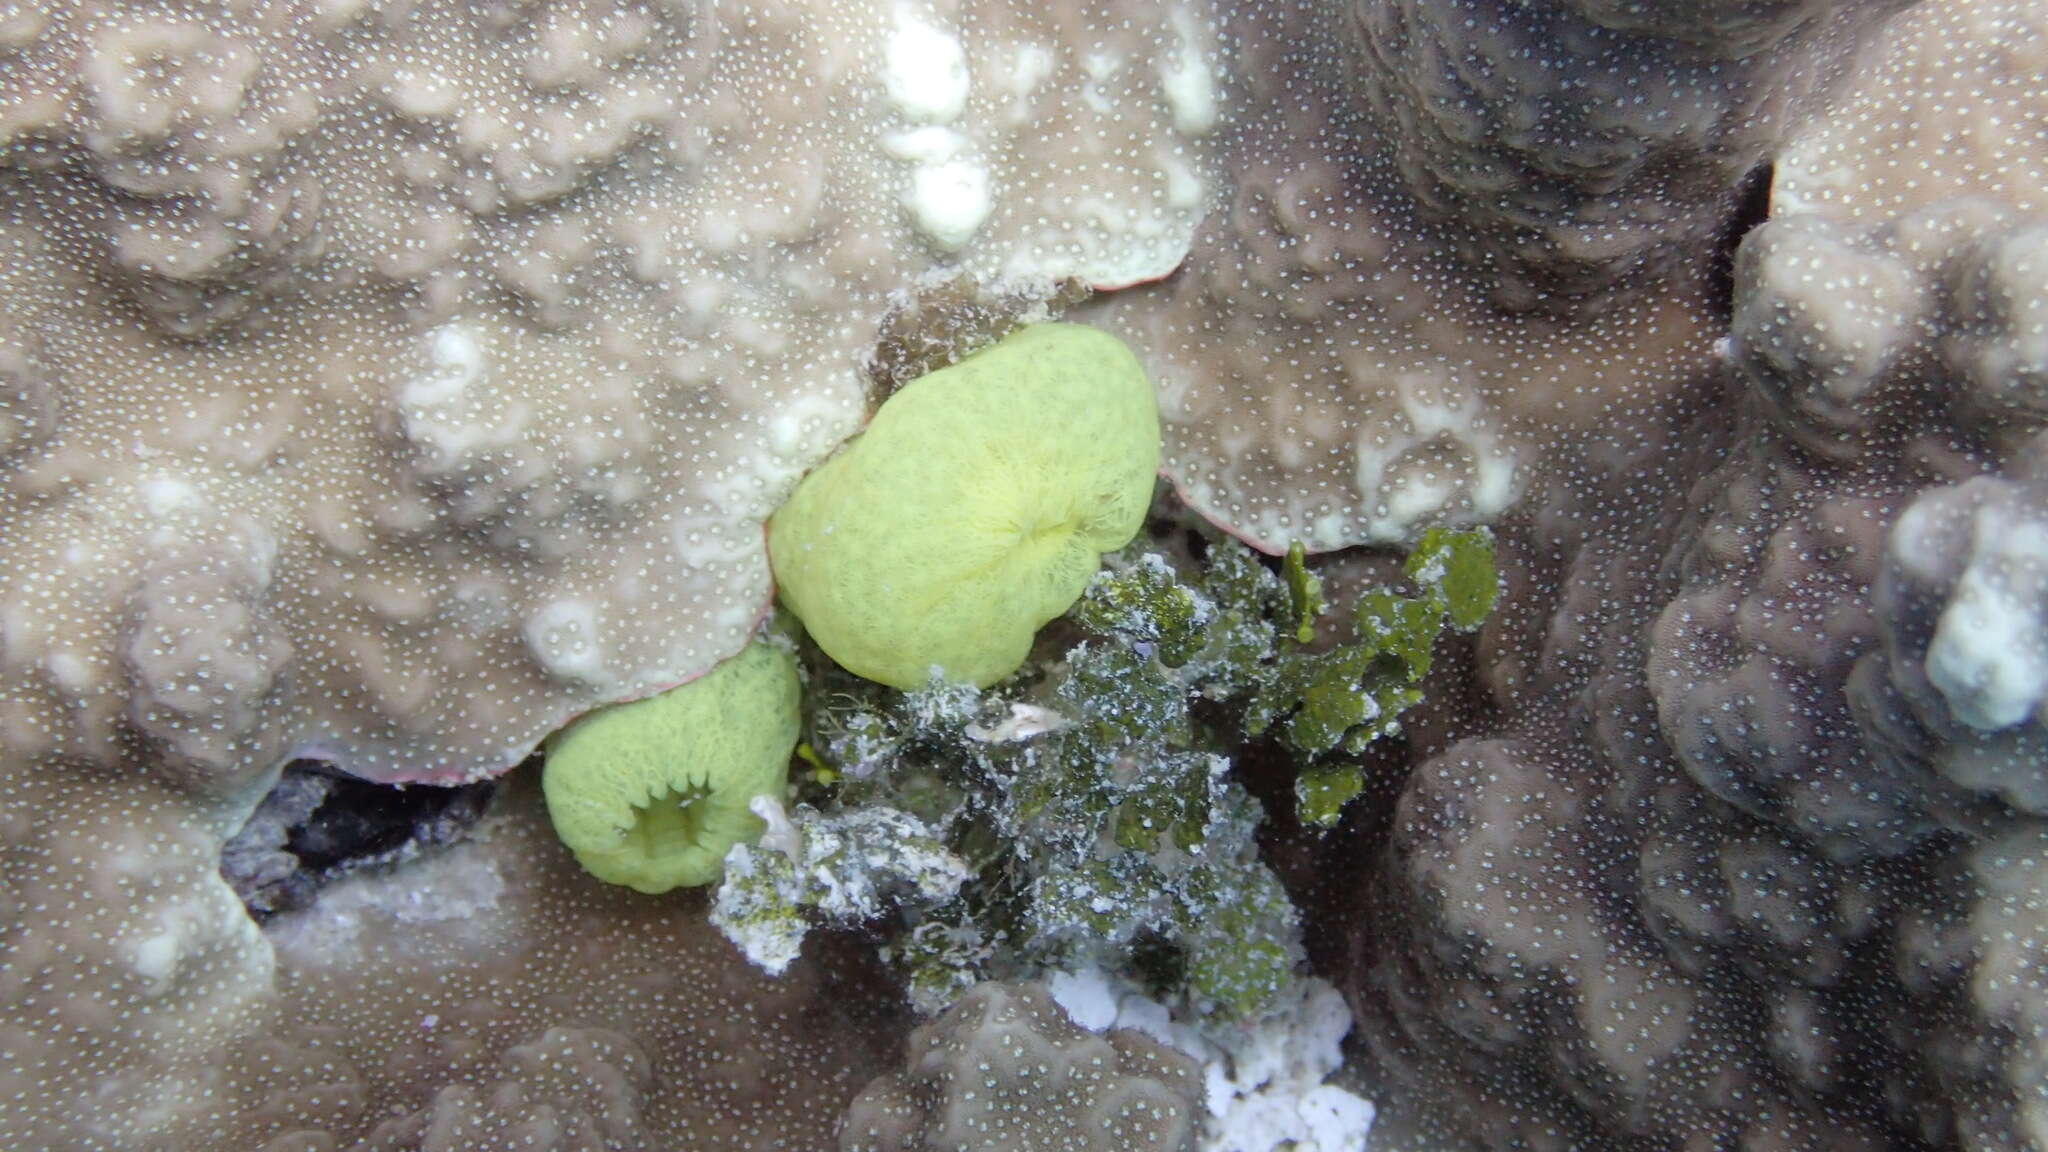 Image of Ascidia ornata Monniot F. & Monniot C. 2001